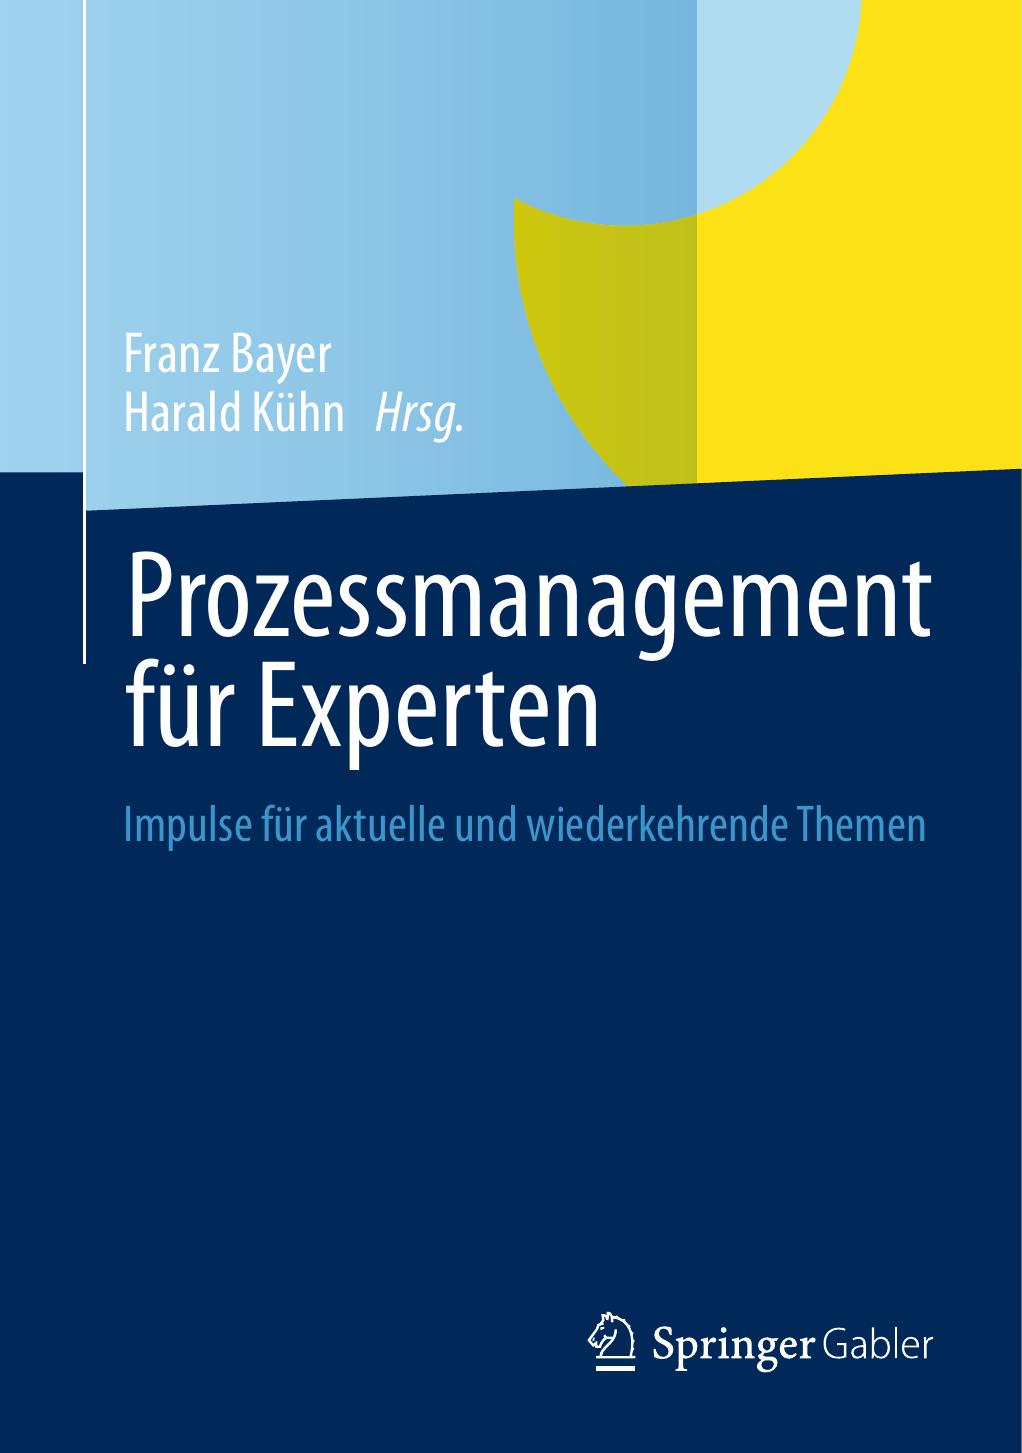 Prozessmanagement für Experten: Impulse für aktuelle und wiederkehrende Themen